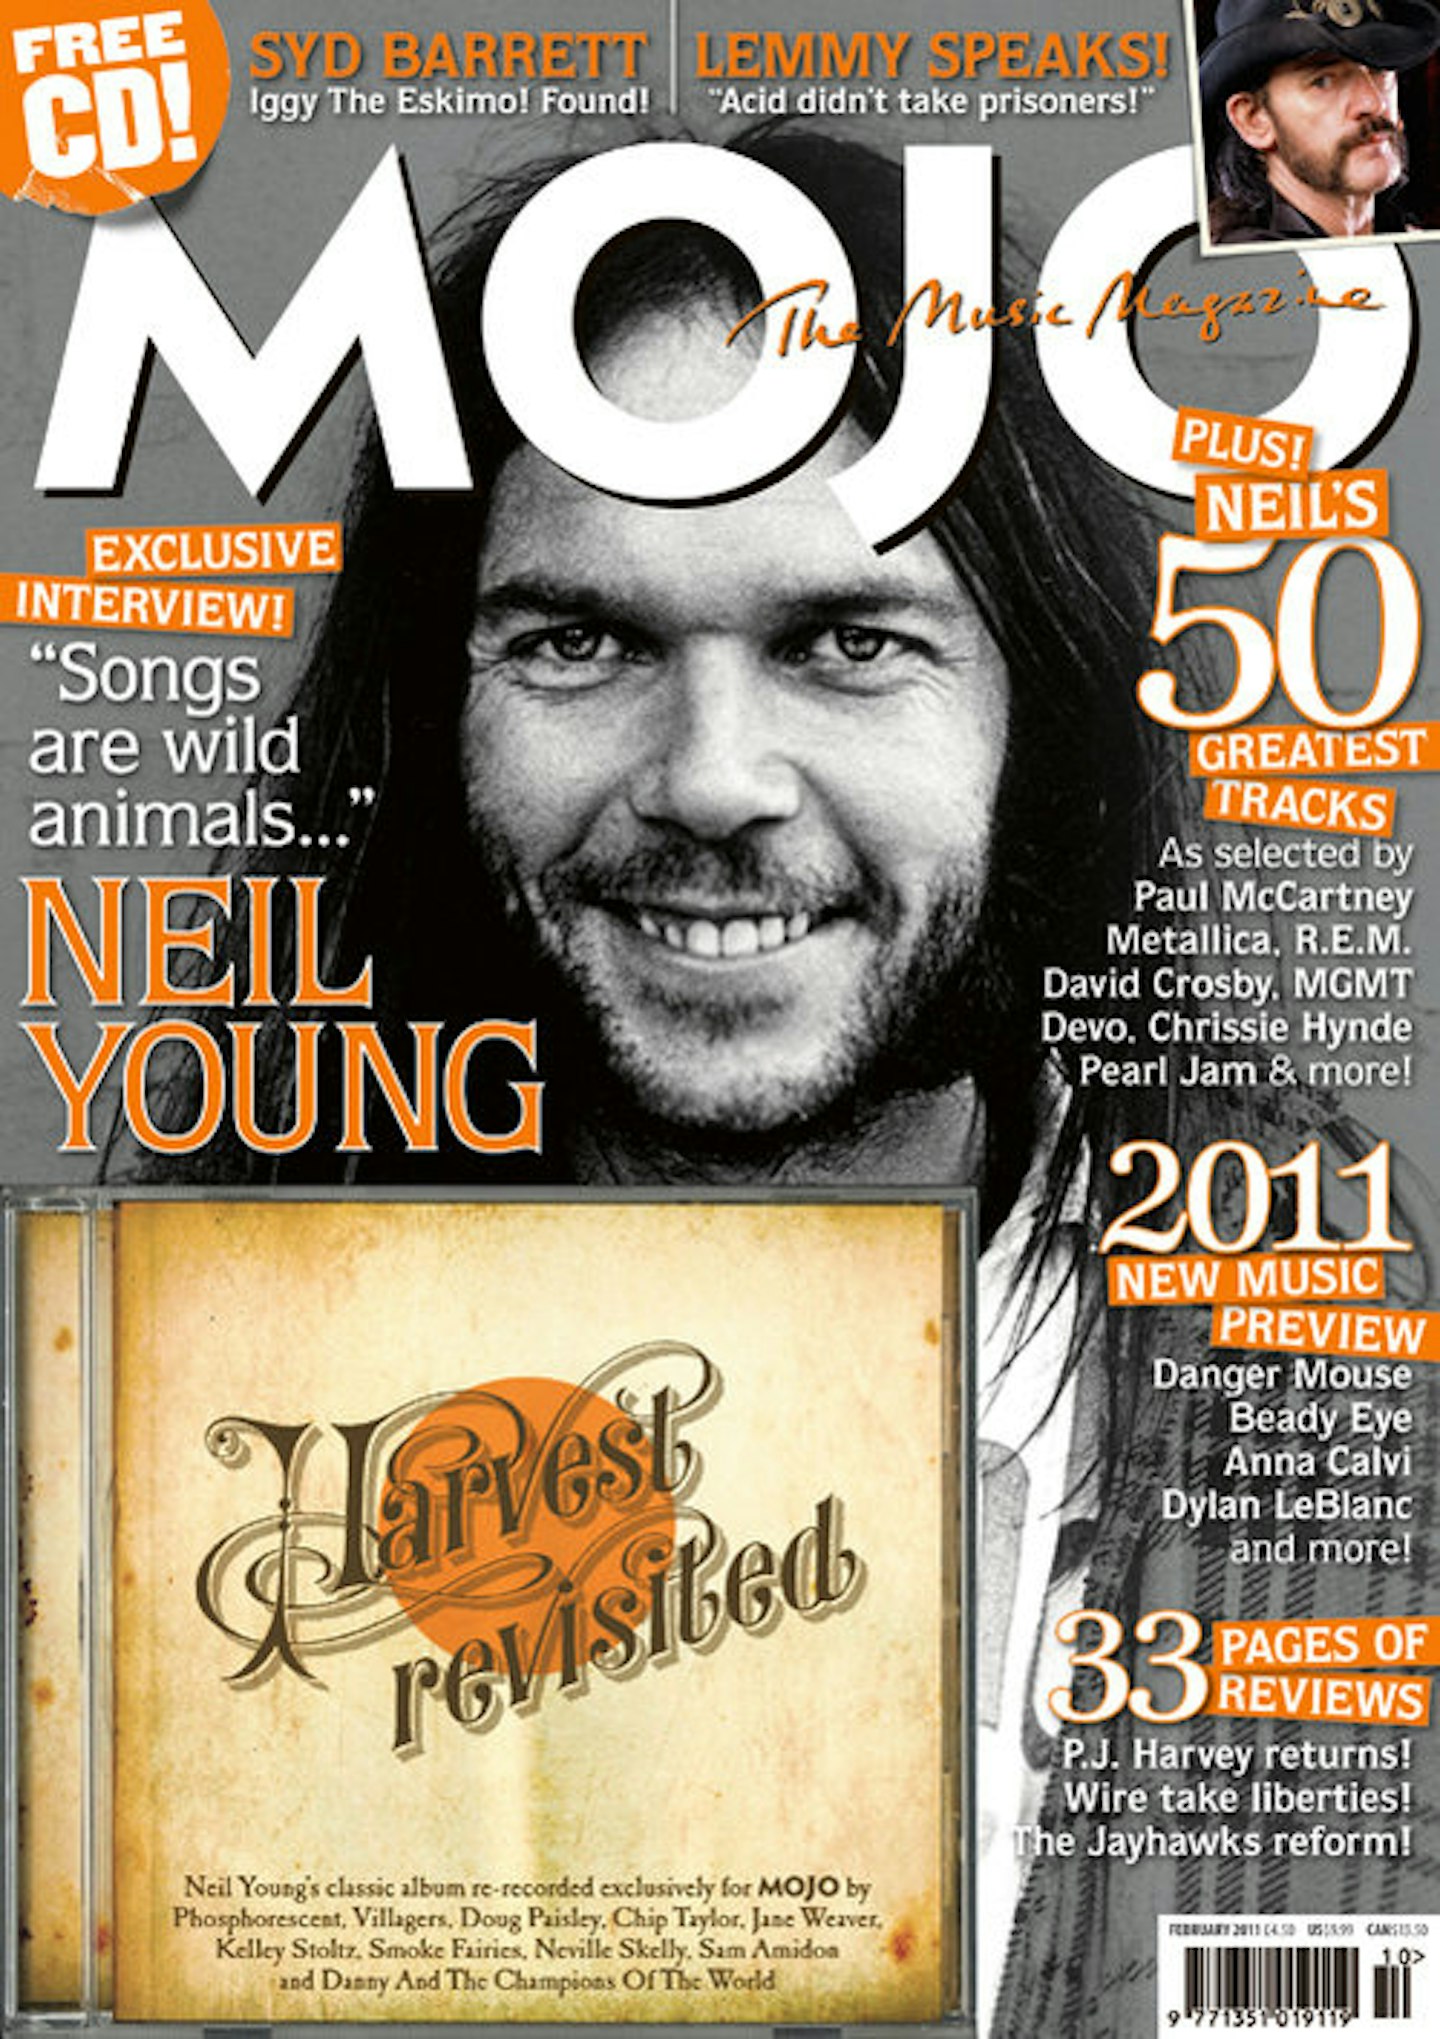 MOJO Issue 207 / February 2011